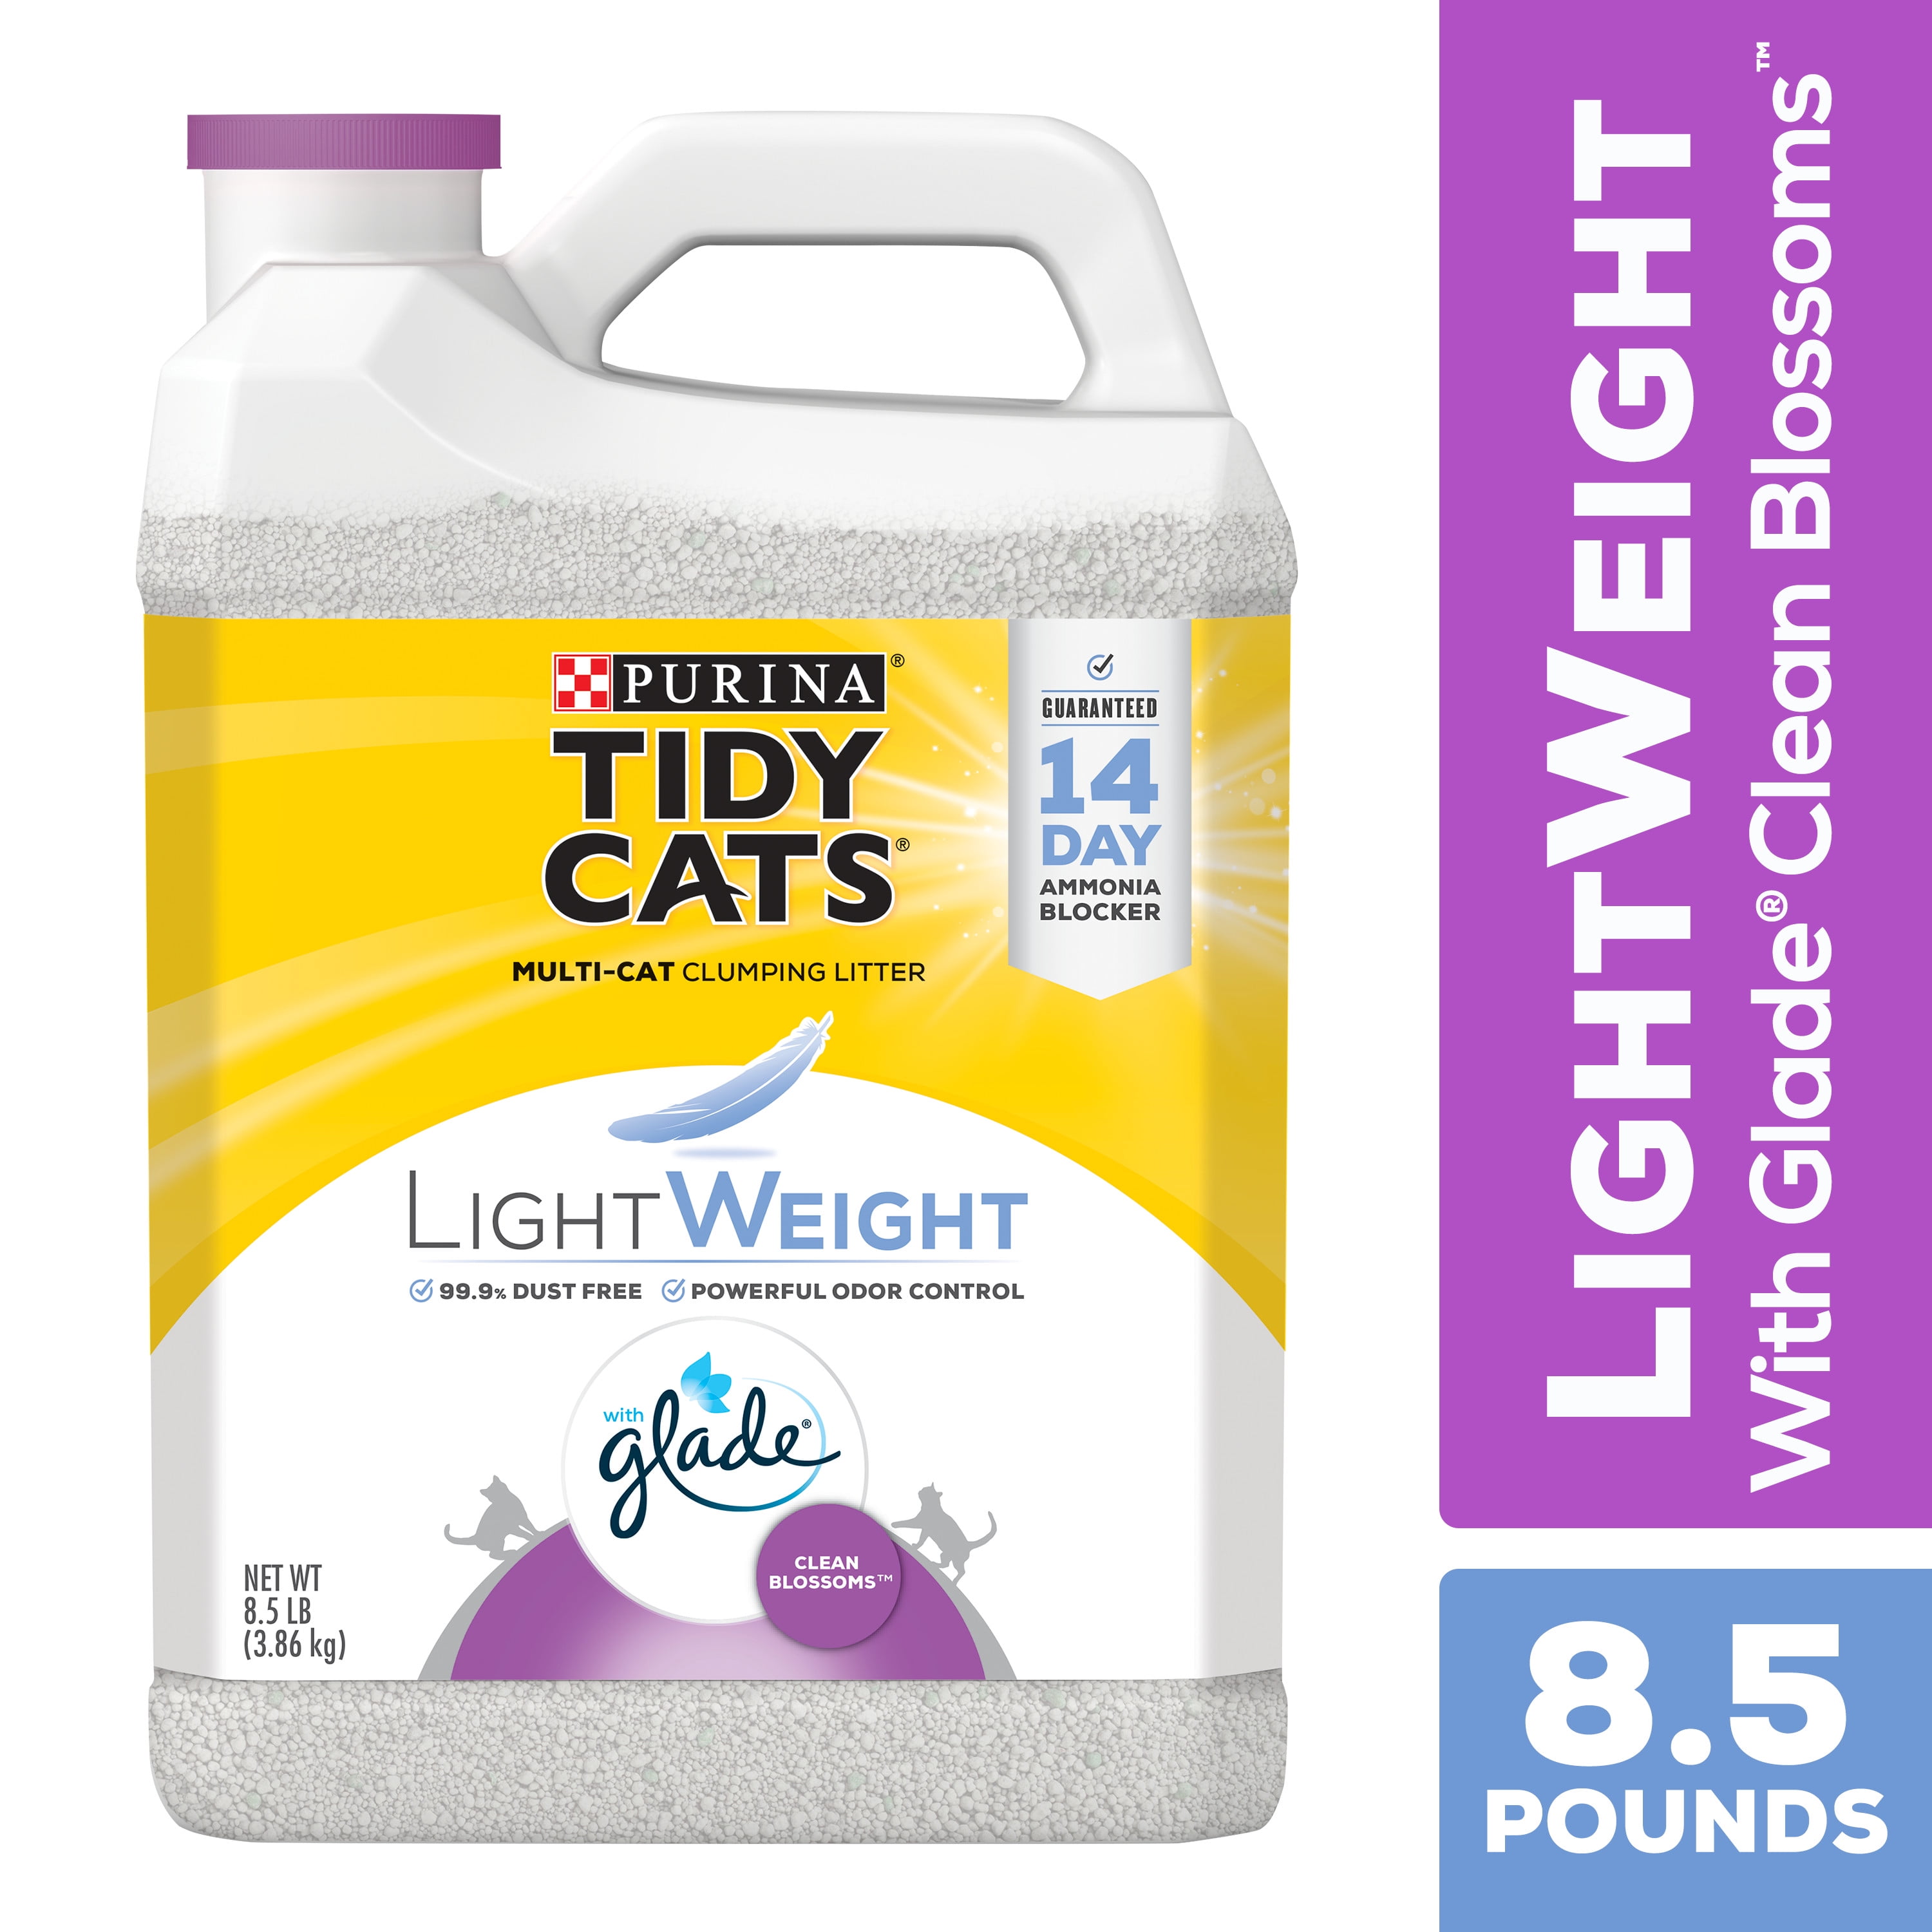 Purina Tidy Cats Low Dust LightWeight Cat Litter, LightWeight Glade